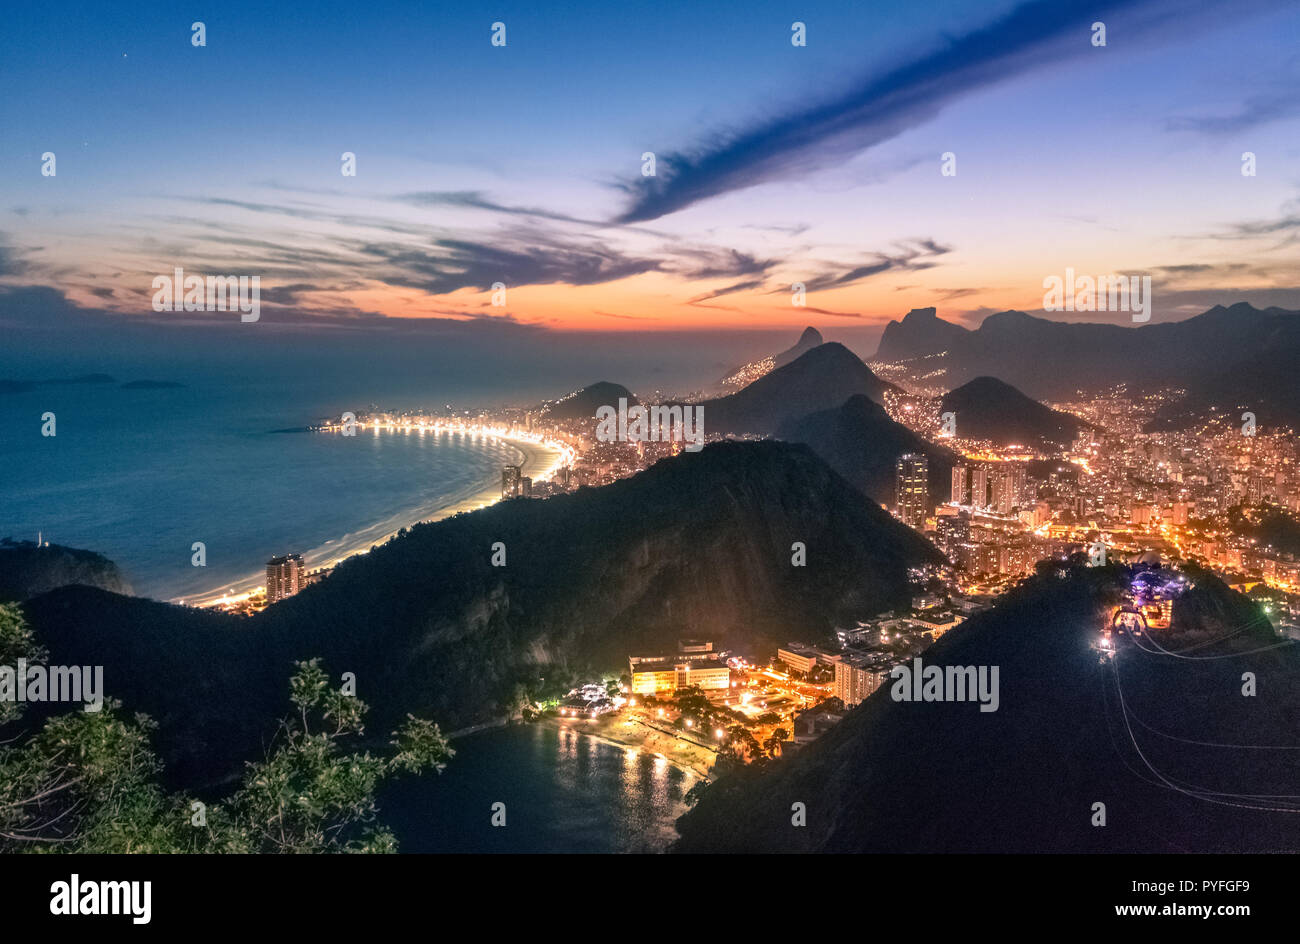 Vue aérienne de la côte de Rio de Janeiro Copacabana Praia Vermelha avec et plage le soir - Rio de Janeiro, Brésil Banque D'Images